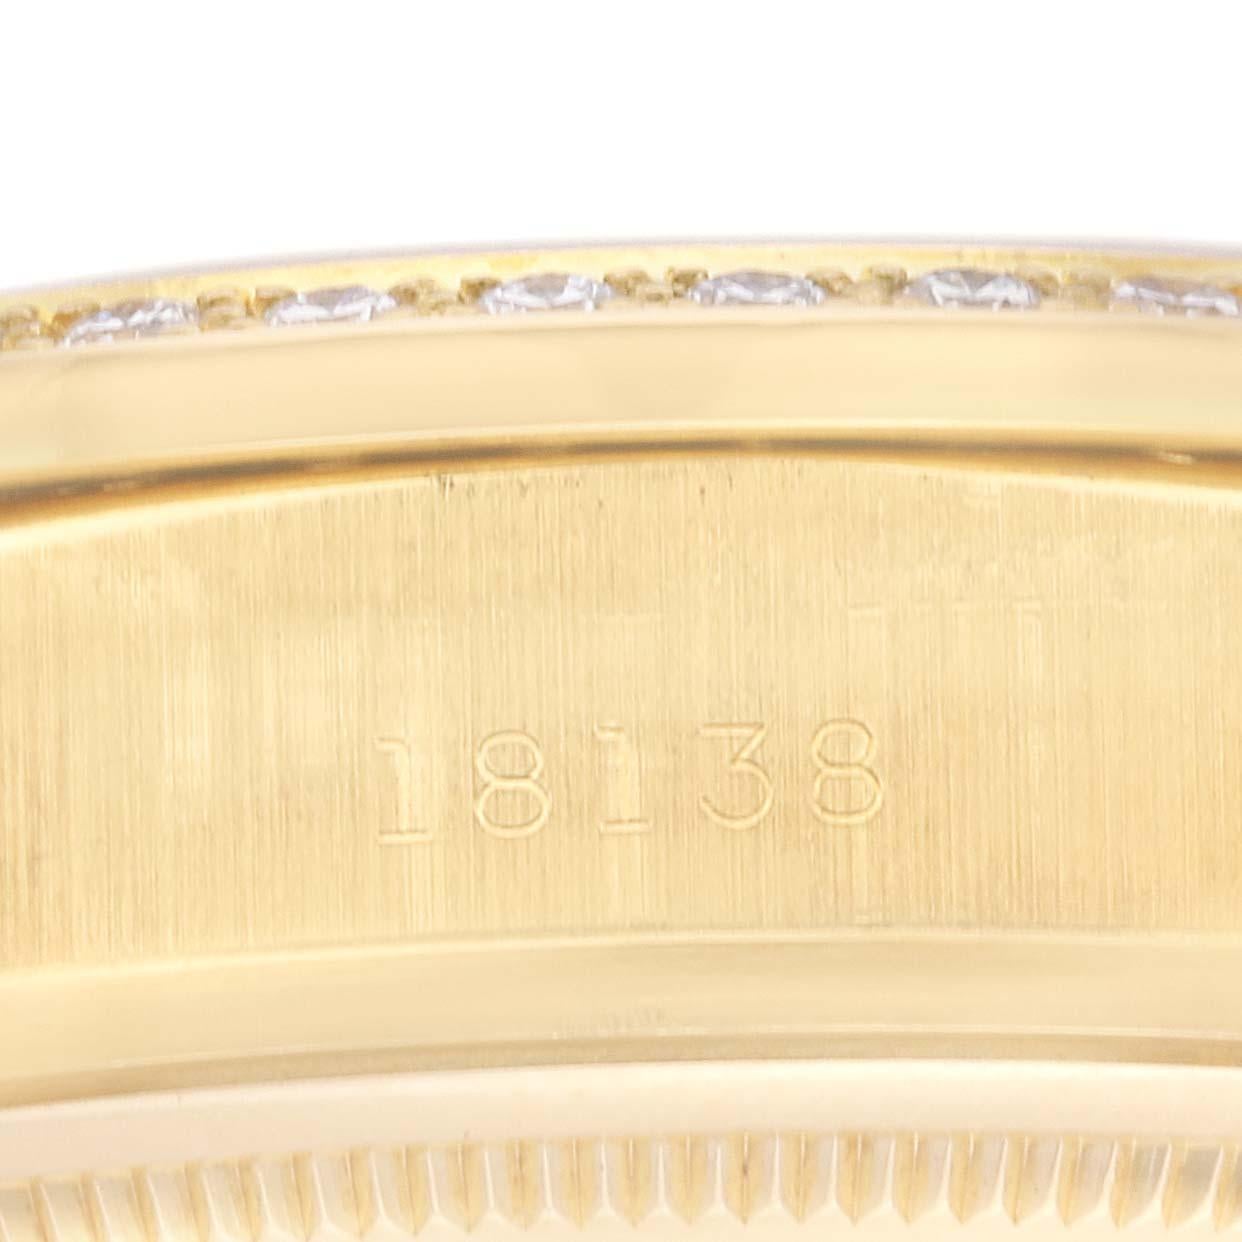 Rolex President Day-Date Montre homme en or jaune avec diamants 18138. Mouvement à remontage automatique certifié officiellement chronomètre. Boîtier oyster en or jaune 18k de 36,0 mm de diamètre.  Logo Rolex sur une couronne. Œillets diamantés